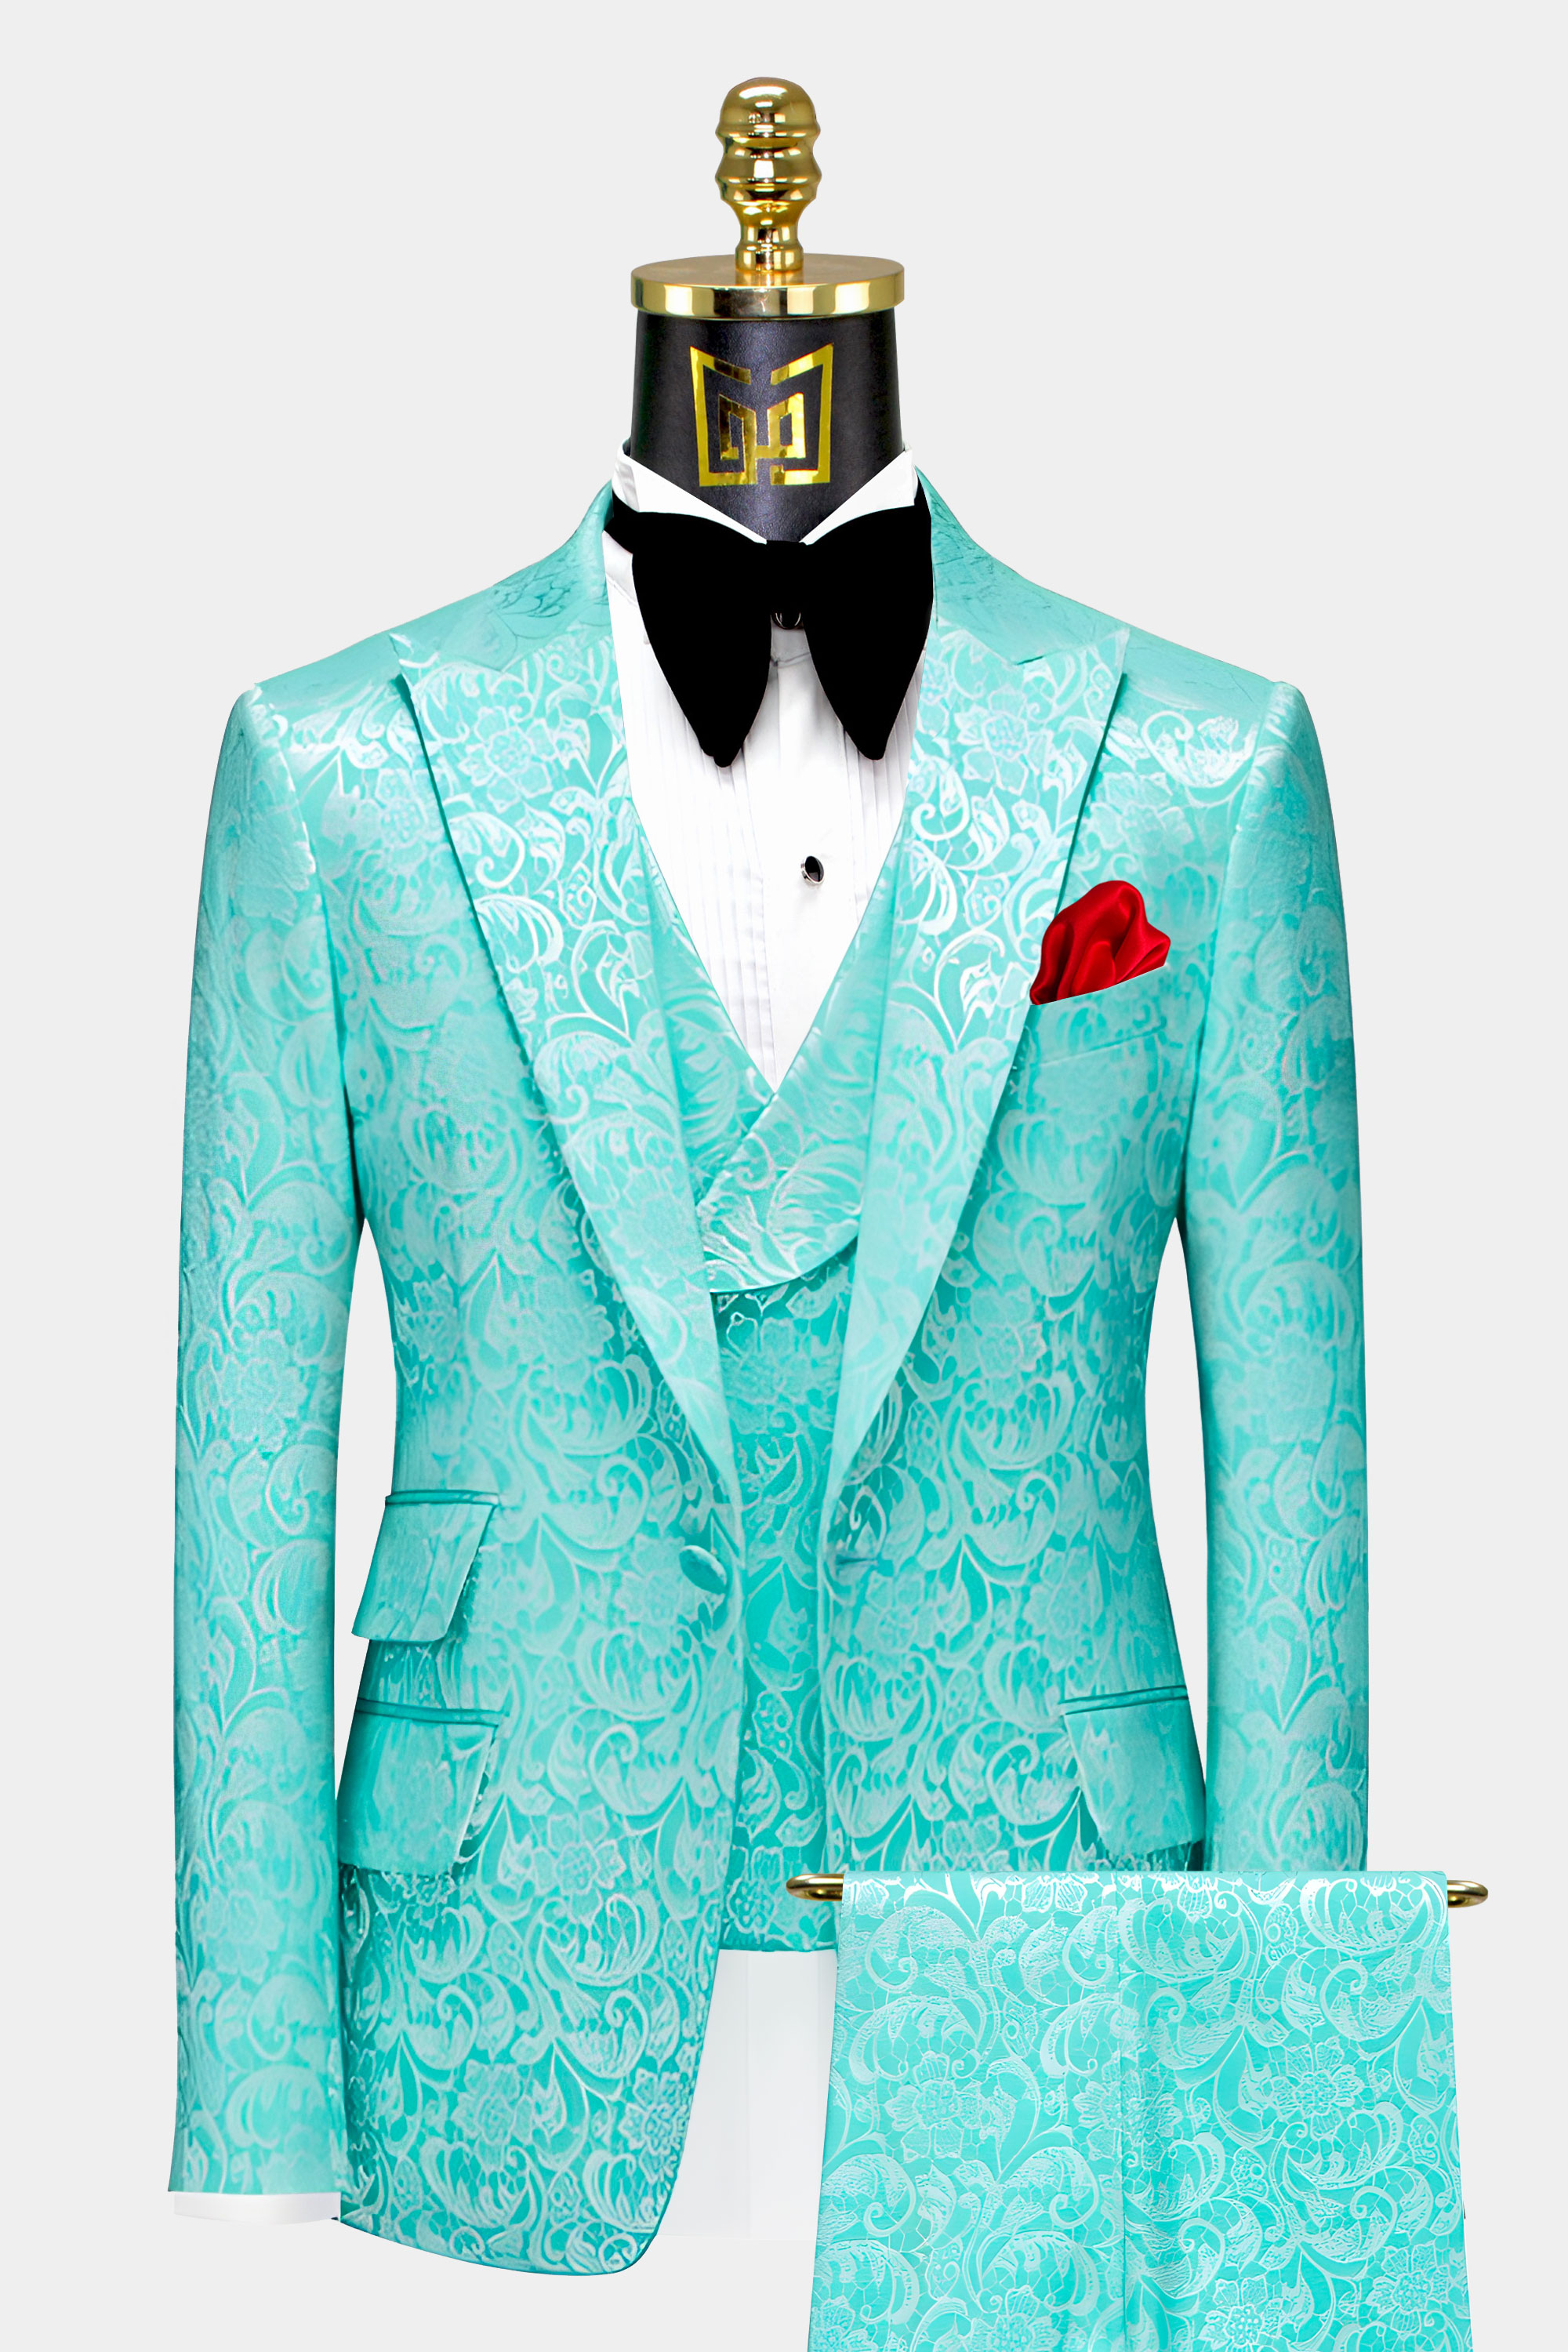 Mens Turquoise Suit Wedding Groom Prom Tuxedo From Gentlemansguru.com  